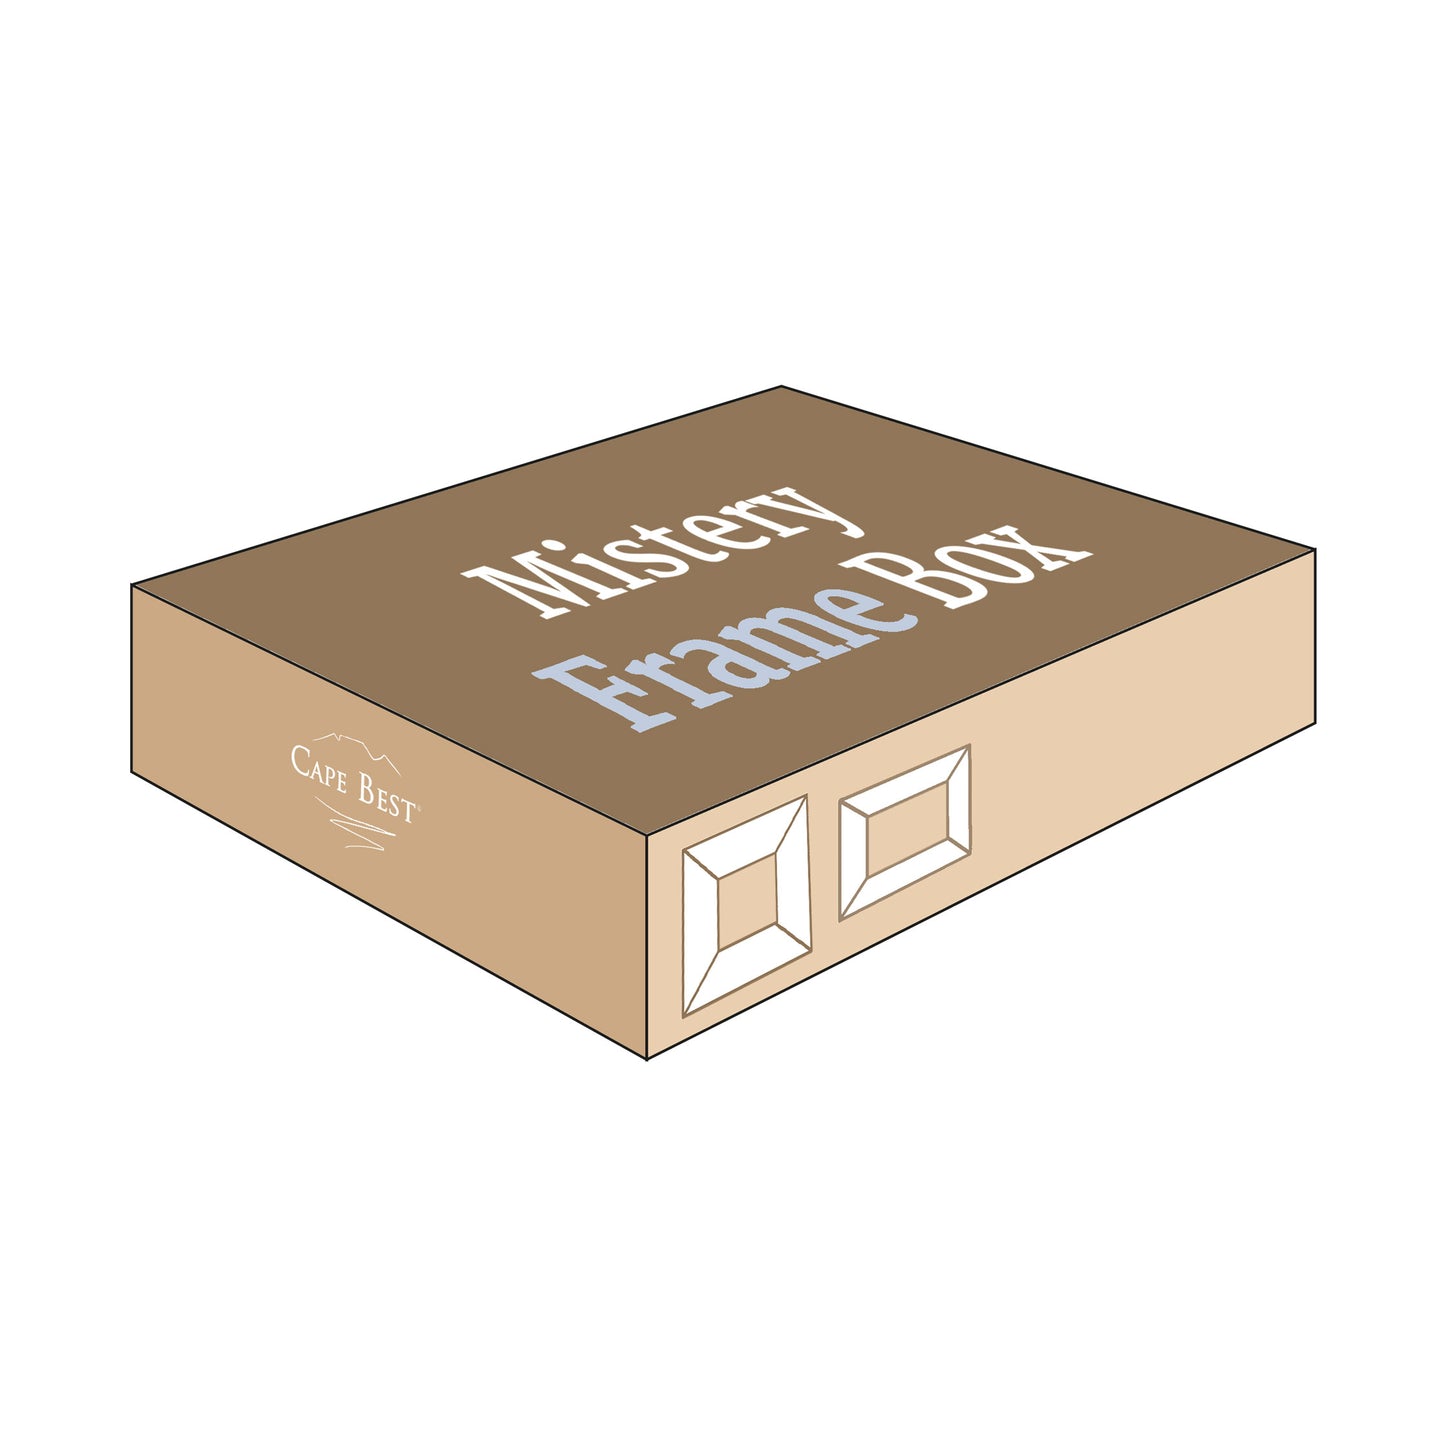 Mistery Box scatola a sopresa con all'interno due cornici scelte da noi! Idea regalo unica e sostenibile